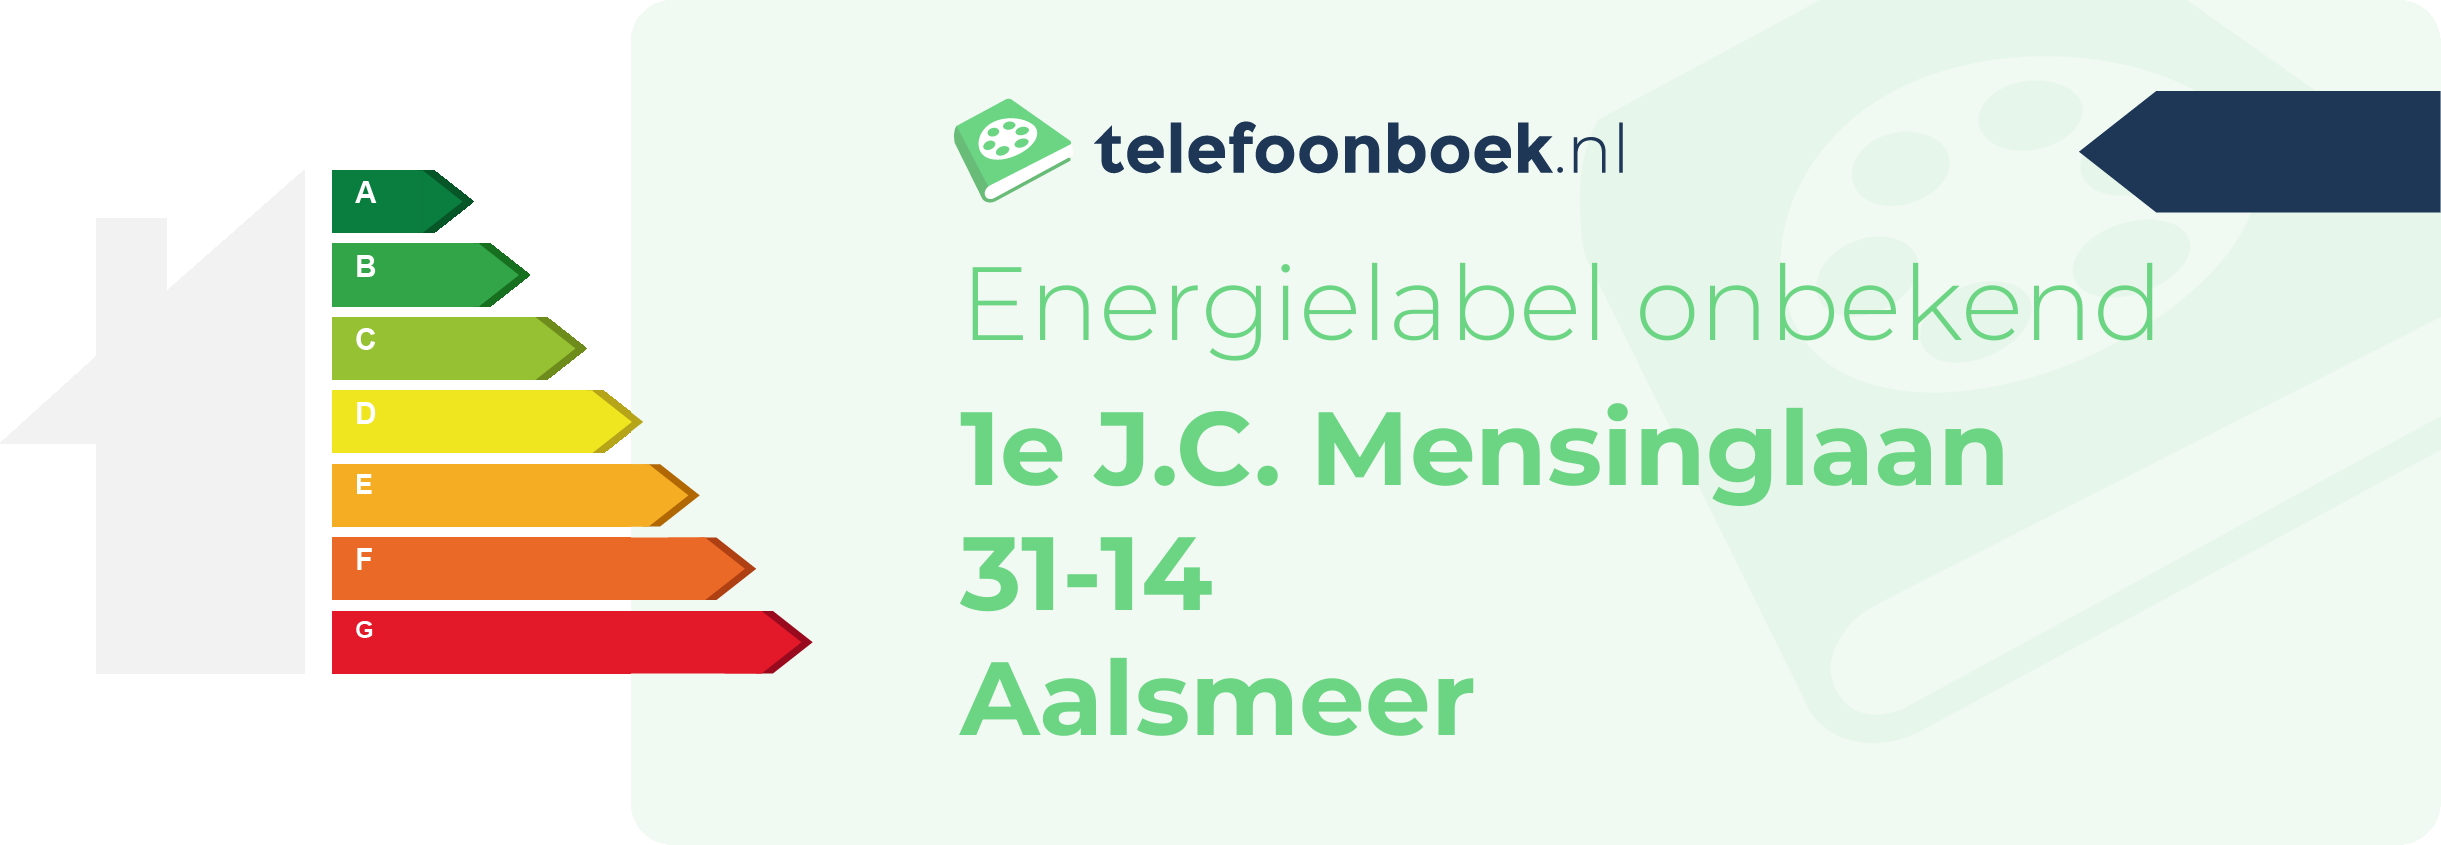 Energielabel 1e J.C. Mensinglaan 31-14 Aalsmeer